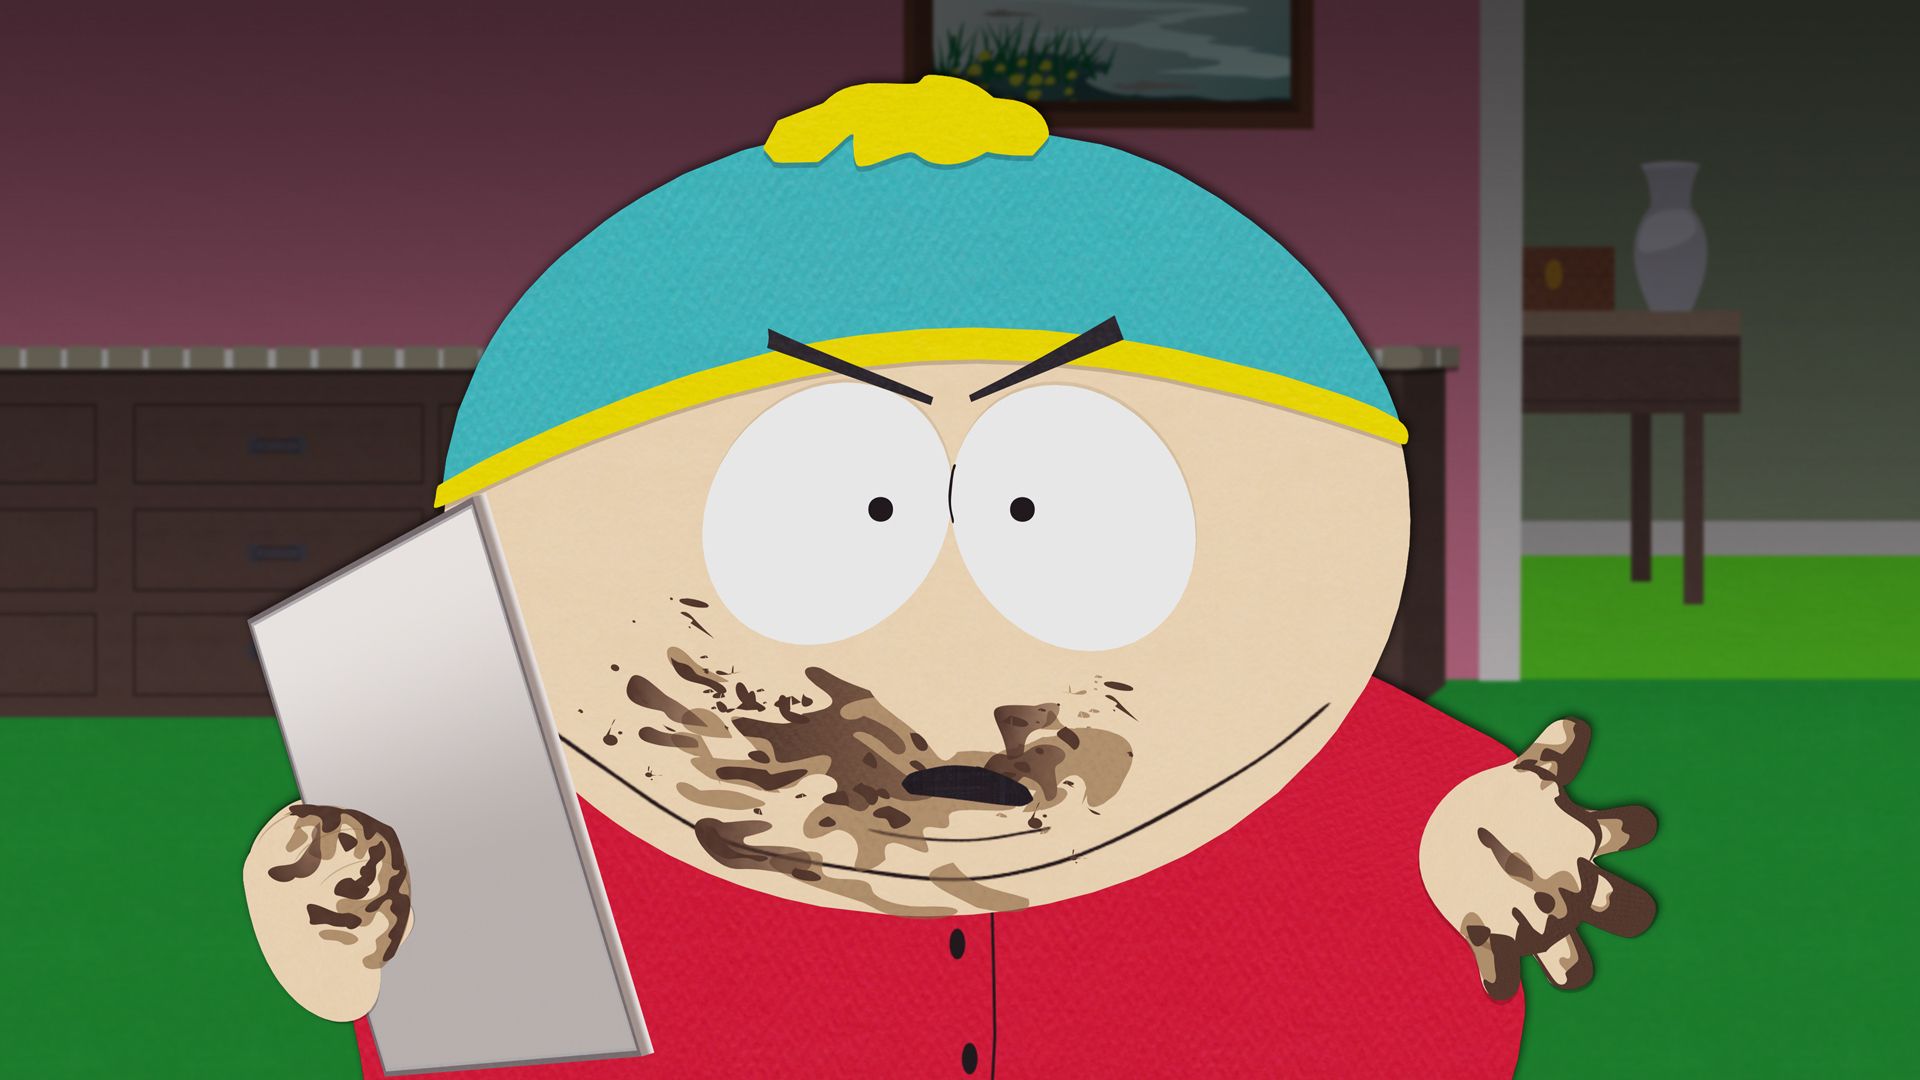 Cena da série South Park apresenta Eric Cartman no plano central da imagem, um menino branco, com sobrepeso, que usa um gorro de inverno azul e amarelo, um casaco vermelho e está segurando um tablet prateado com as mãos e boca sujas de chocolate. Sua expressão é de braveza. No fundo aparece sua casa, com paredes rosa e piso verde.